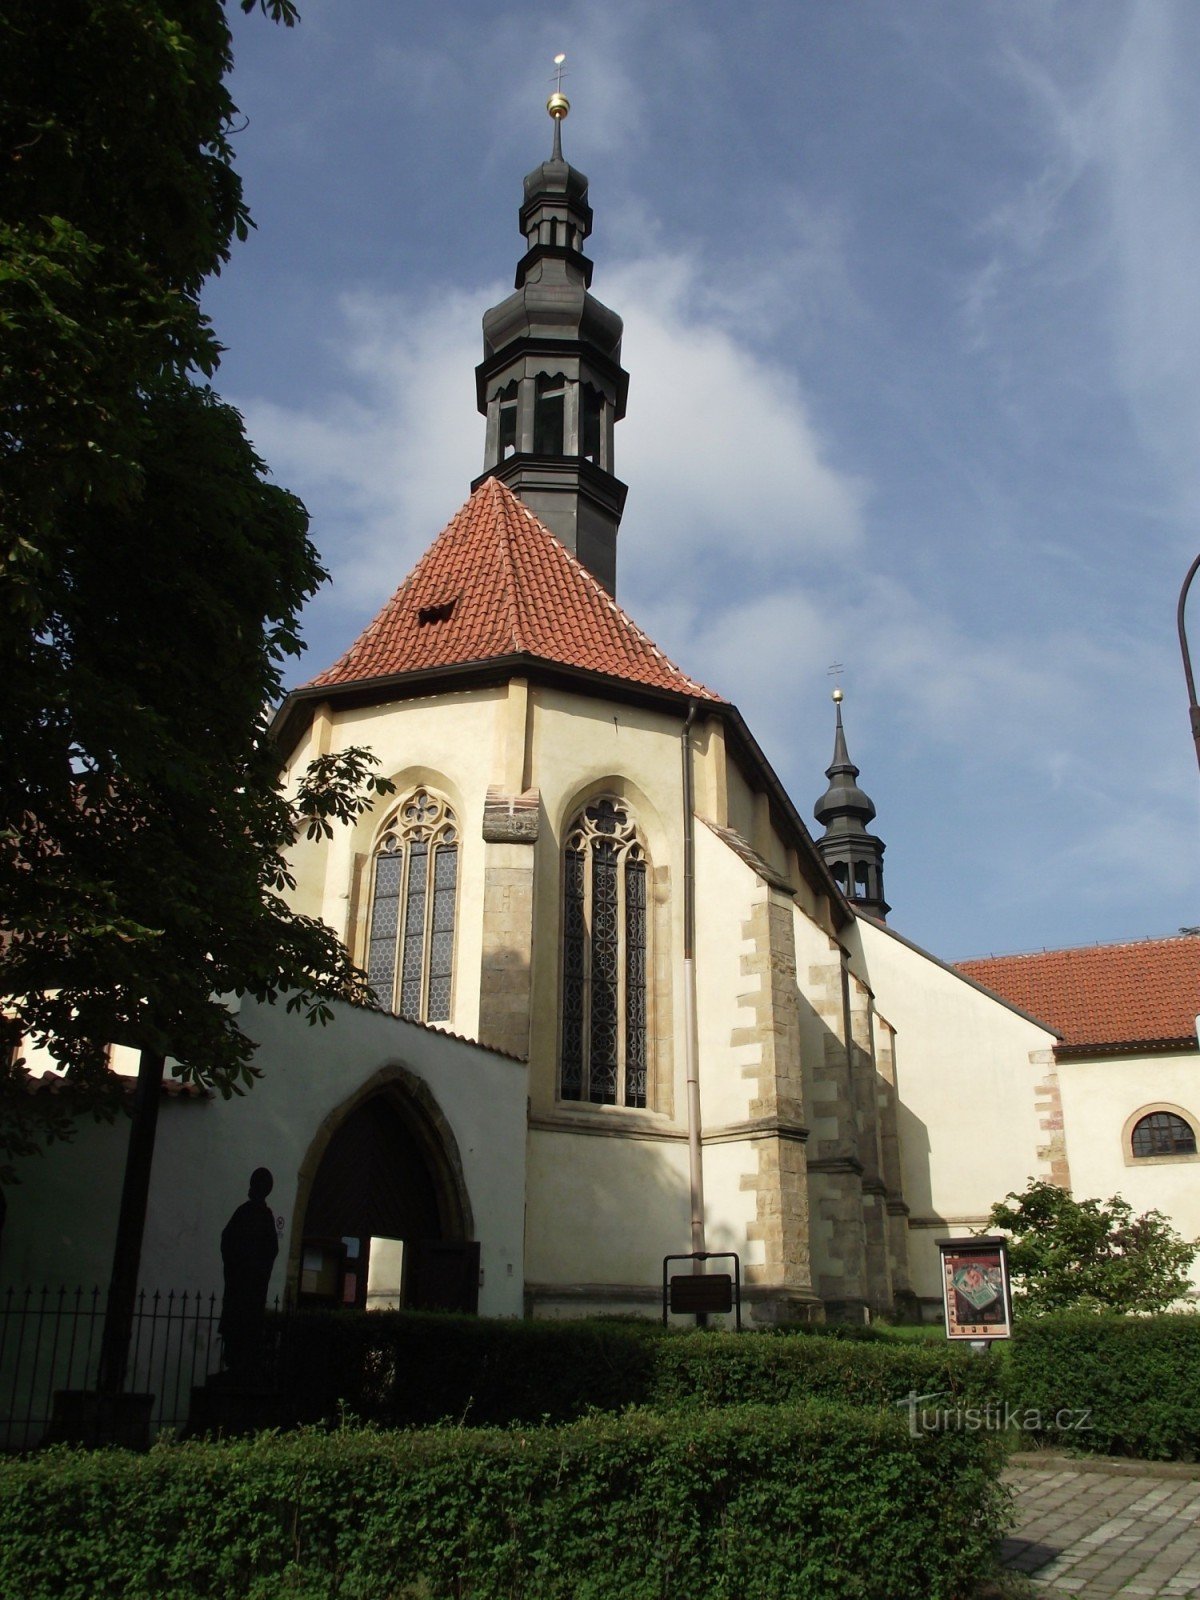 Kadaň - Franciskanerkloster